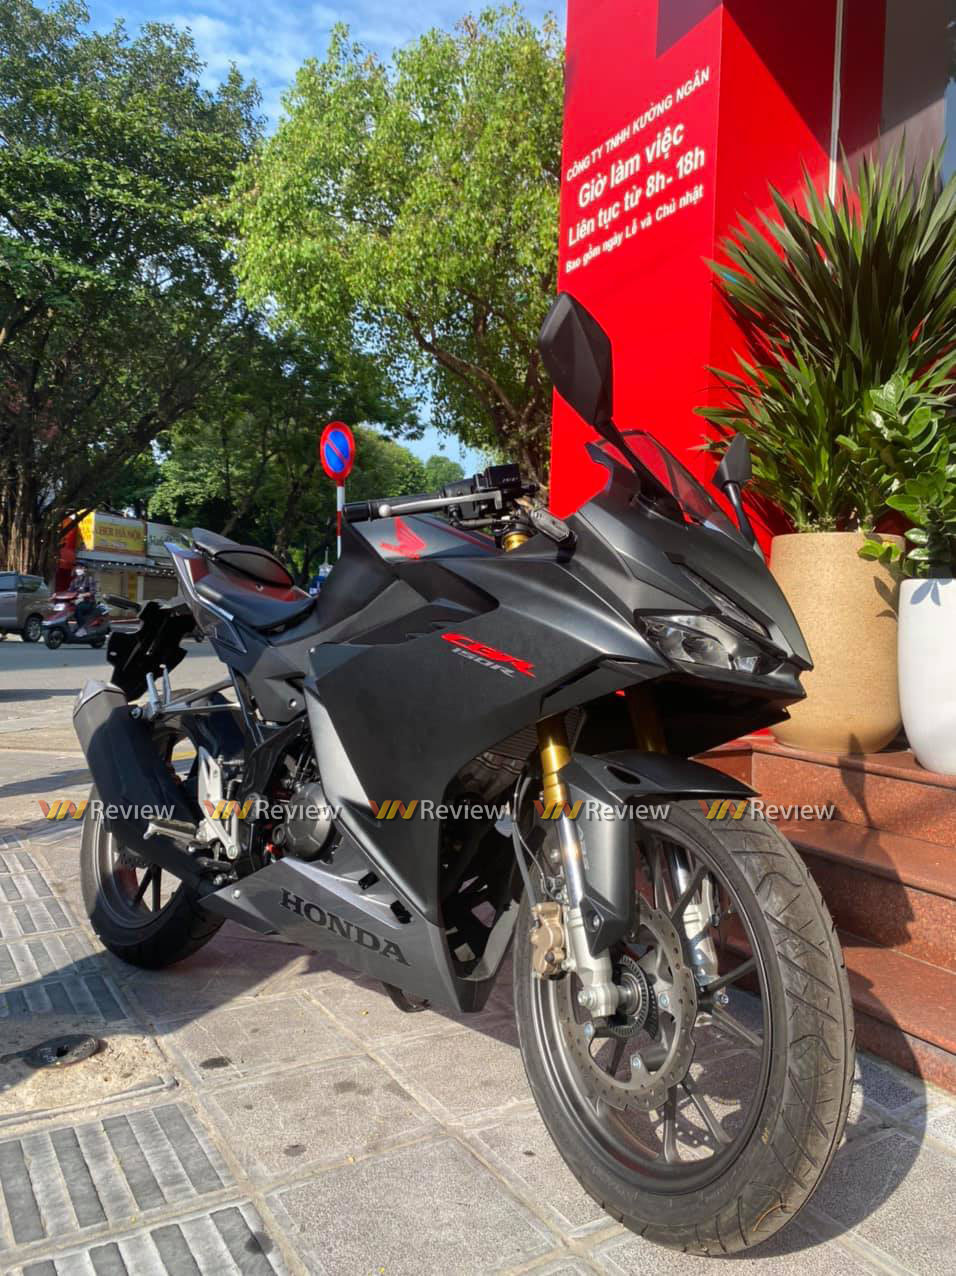 Cận cảnh Honda CBR150R 2021 tại Hà Nội